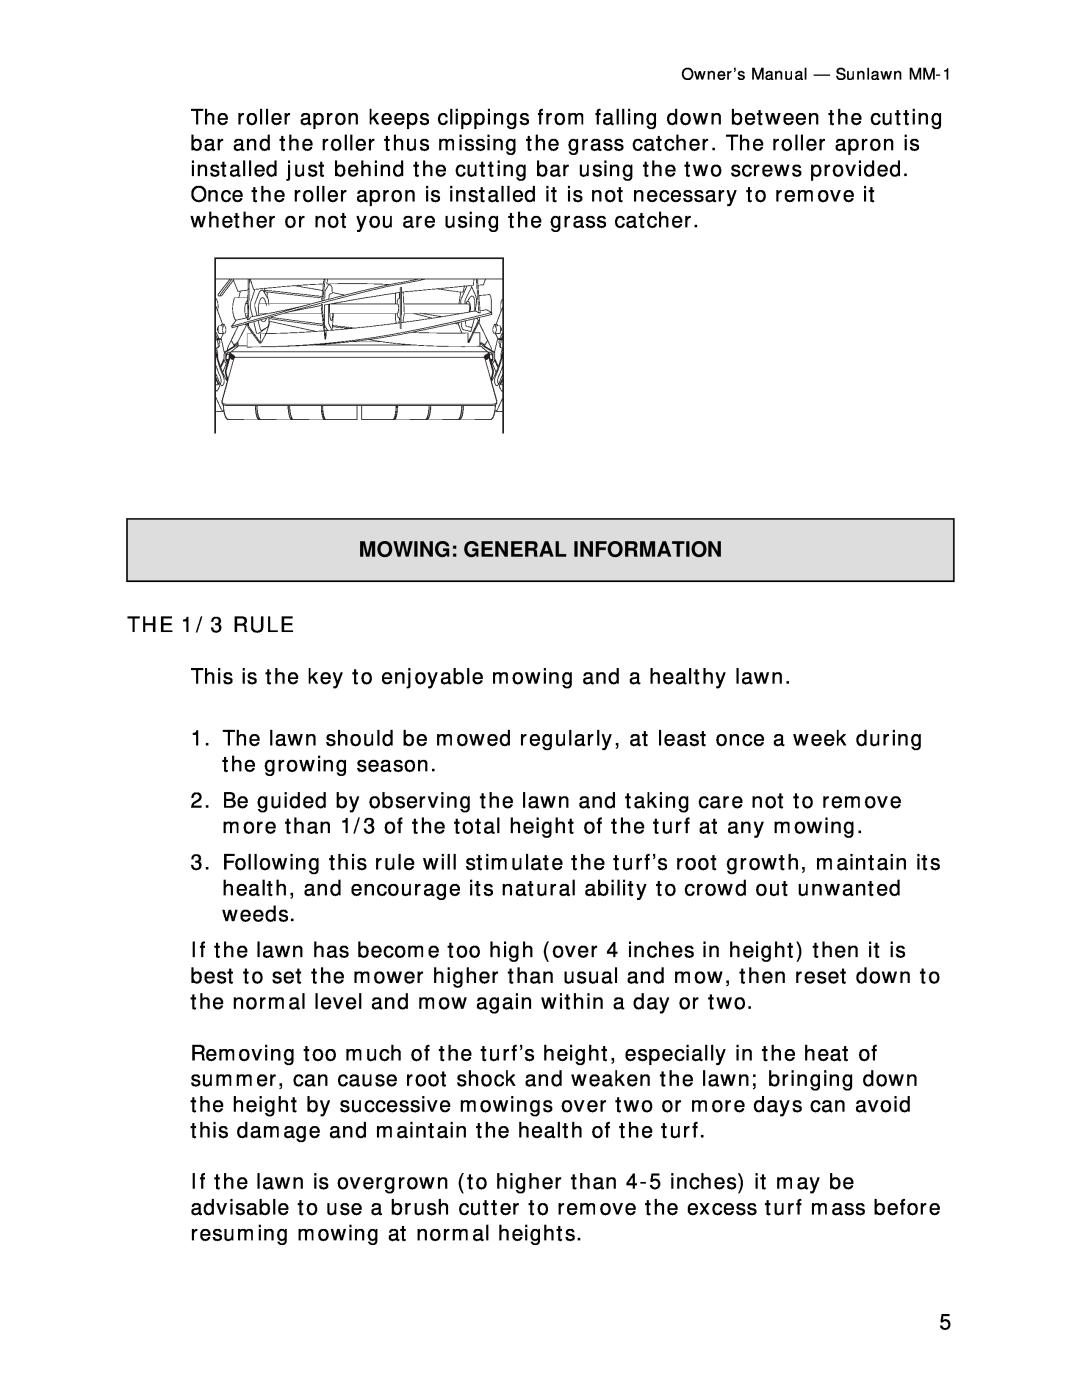 Reel Mowers, Etc MM-1 owner manual THE 1/3 RULE, Mowing General Information 